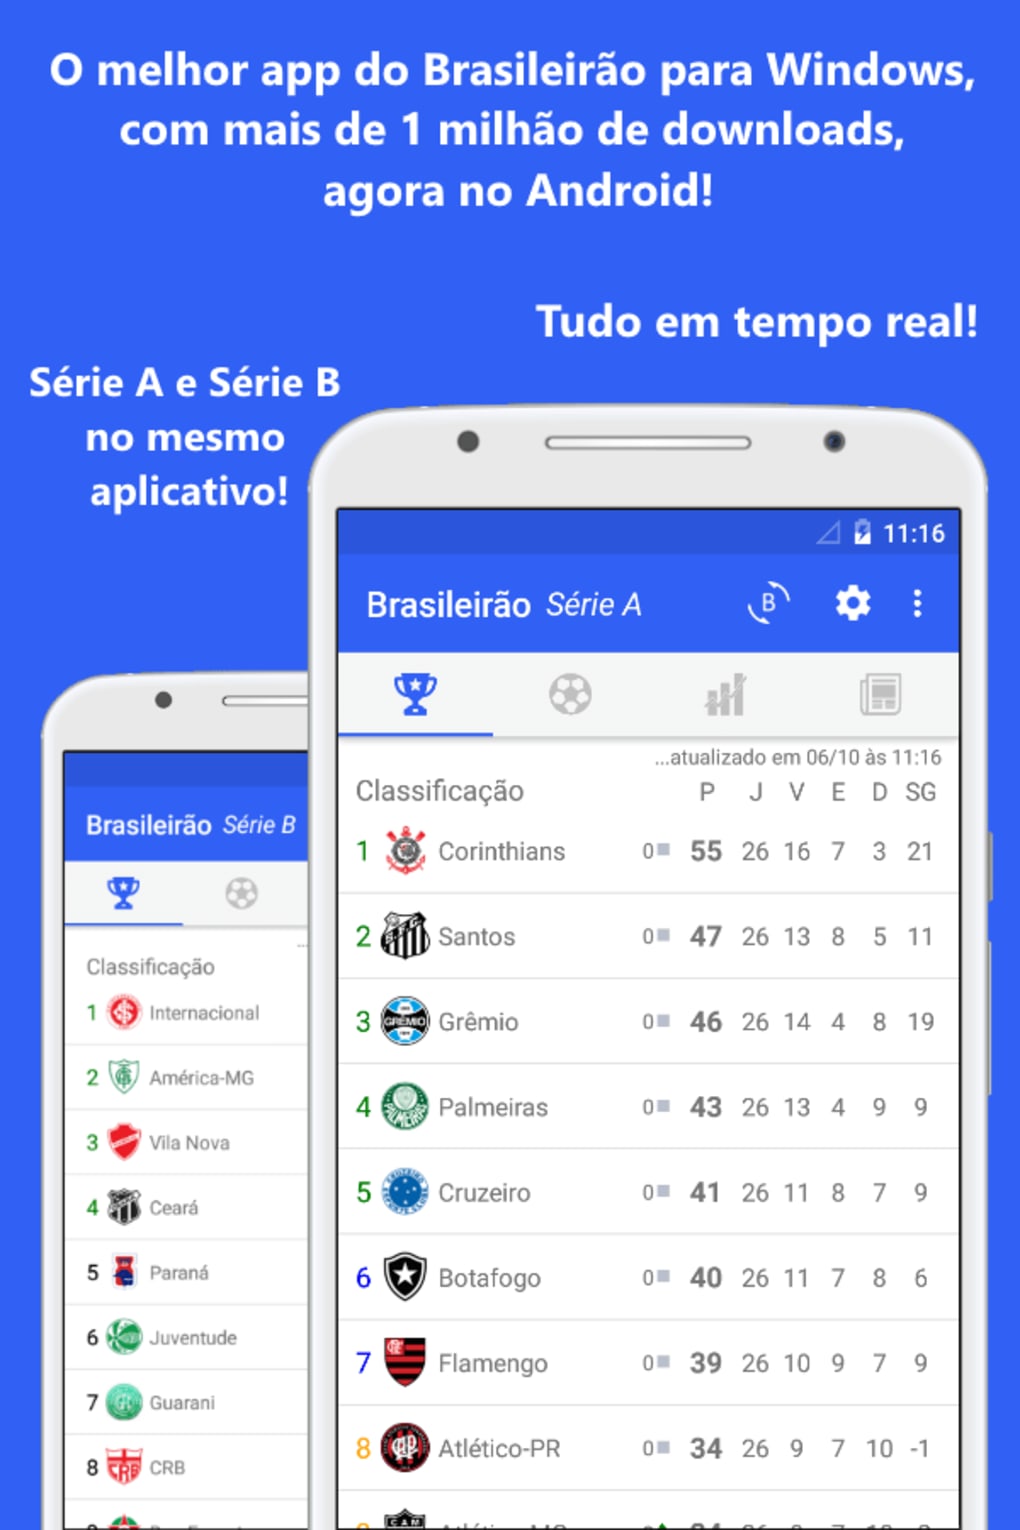 Brasileirão Série A, Software